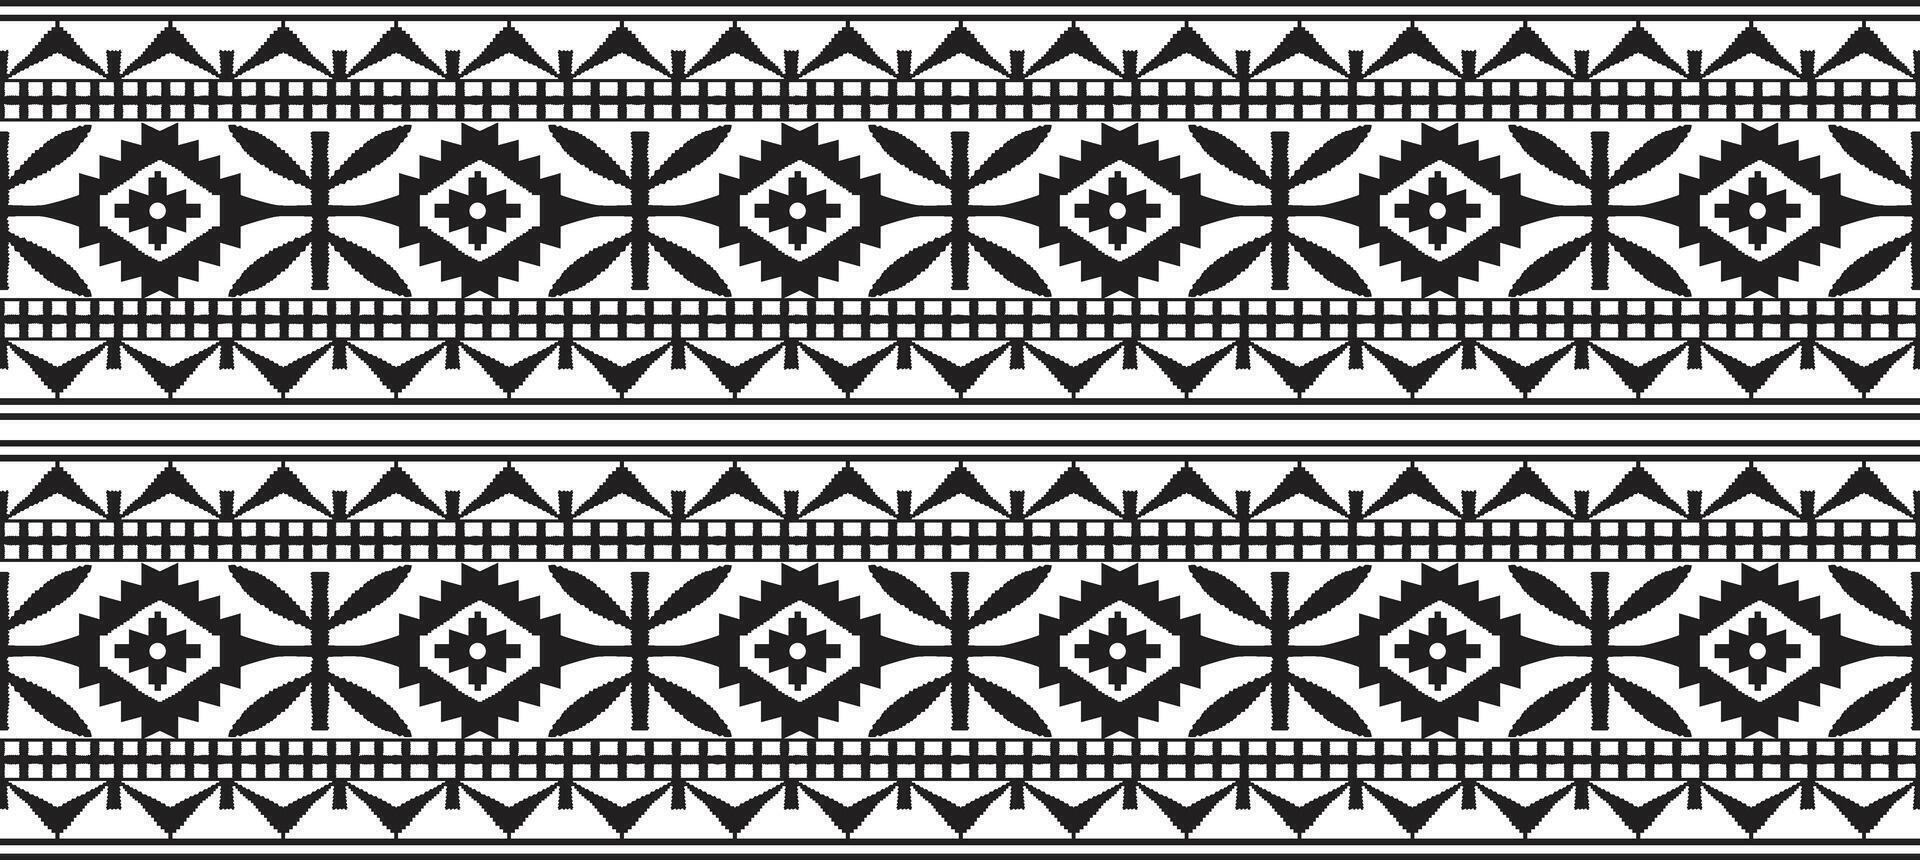 aztec etnisch patronen zijn traditioneel. meetkundig oosters naadloos patroon. grens decoratie. ontwerp voor achtergrond, vector illustratie, textiel, tapijt, kleding stof, kleding, en borduurwerk.